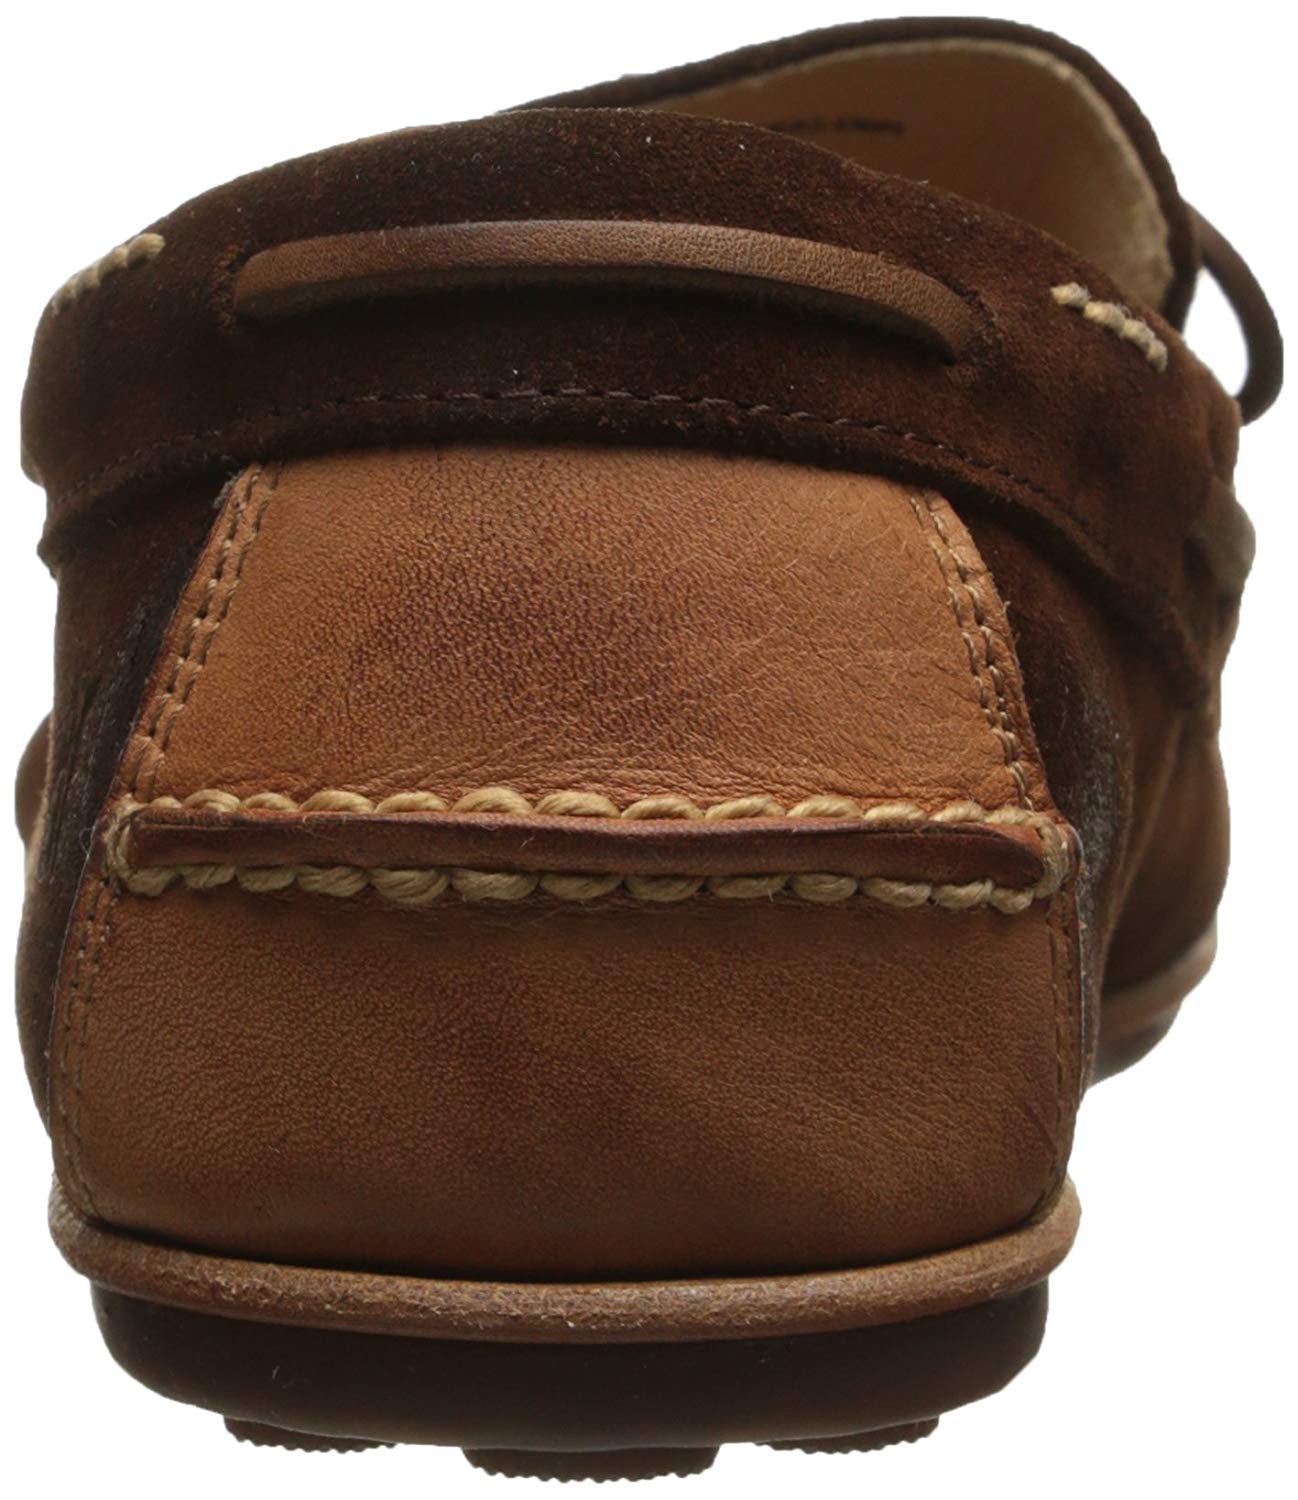 FRYE Men's Harris Tie Slip-On Loafer, Brown, Size 9.5 | eBay